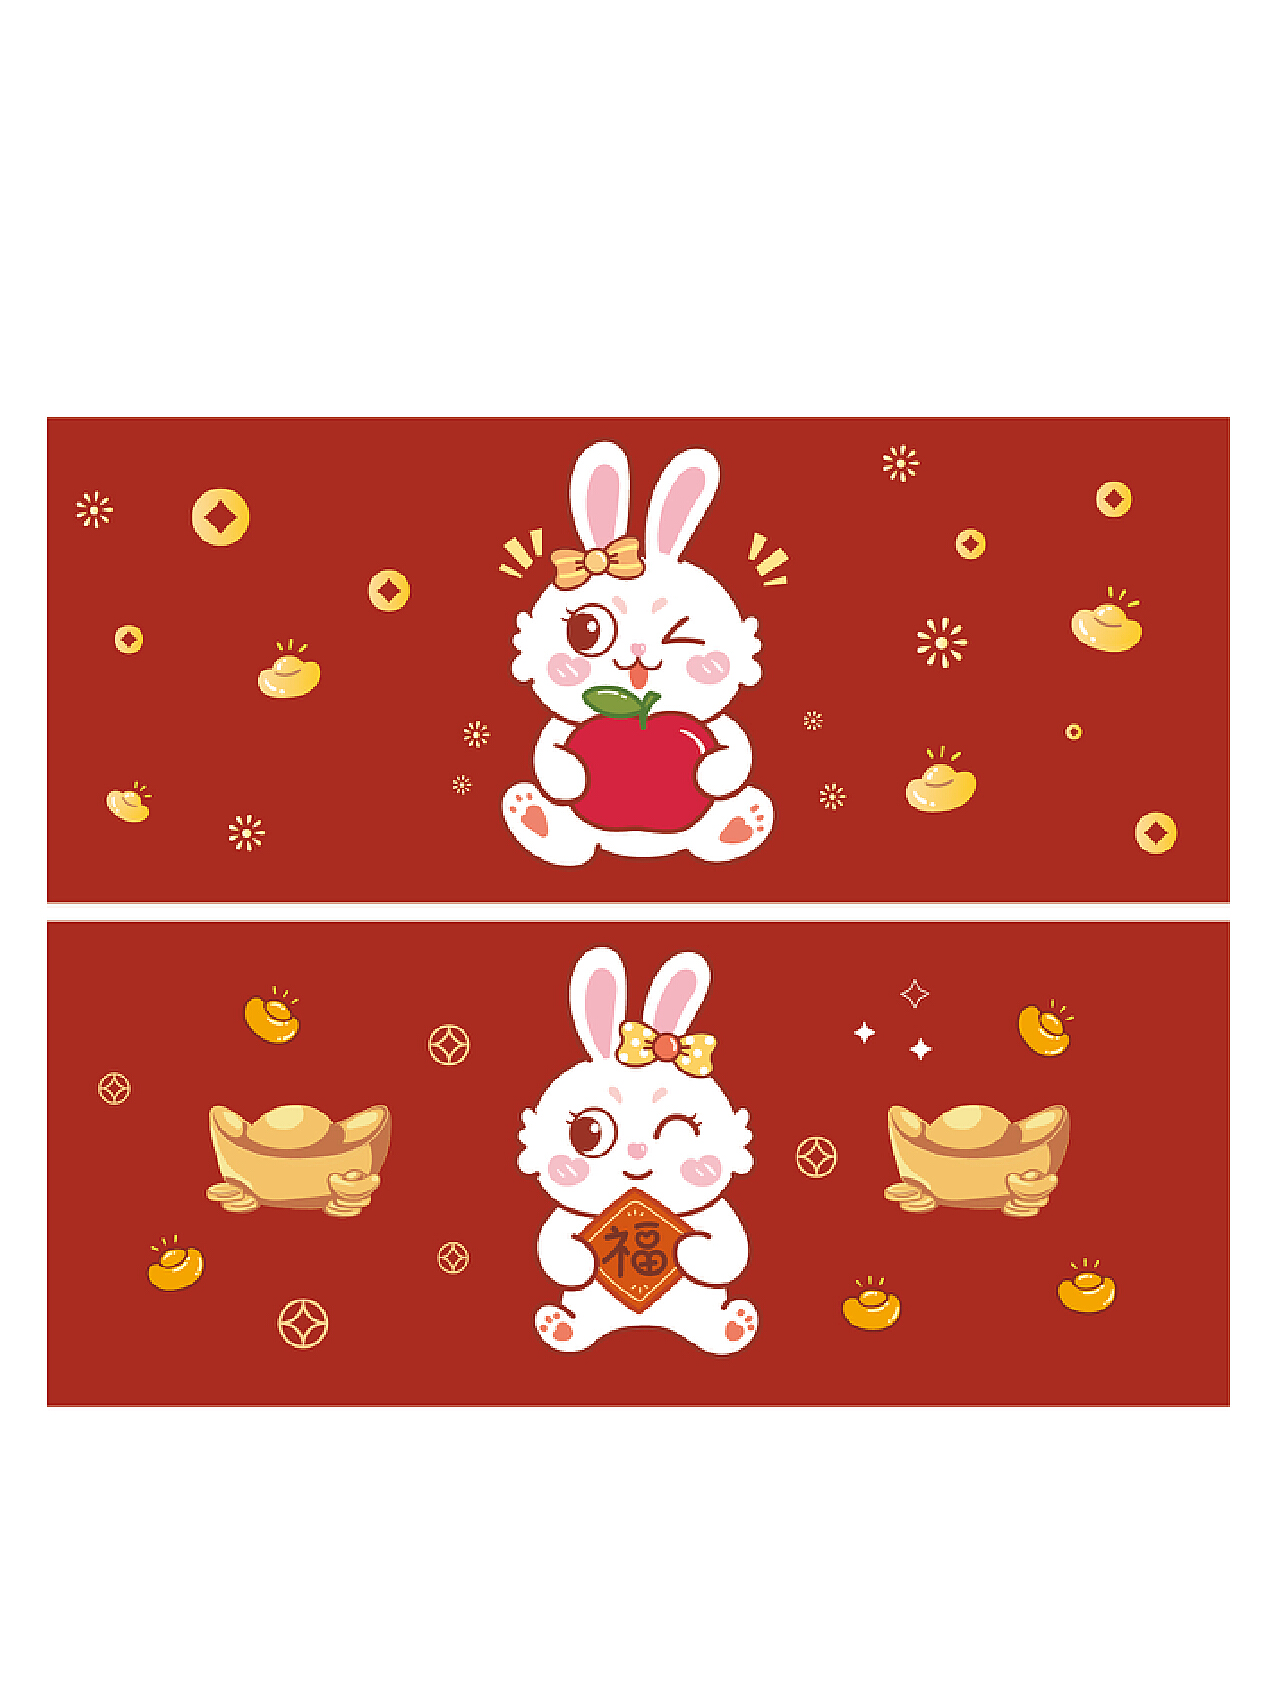 好吃又好玩的兔年蛋糕！ 金澤萬久 兔年金箔蜂蜜蛋糕 & 玉兔迎春年輪蛋糕｜日本好物調查局